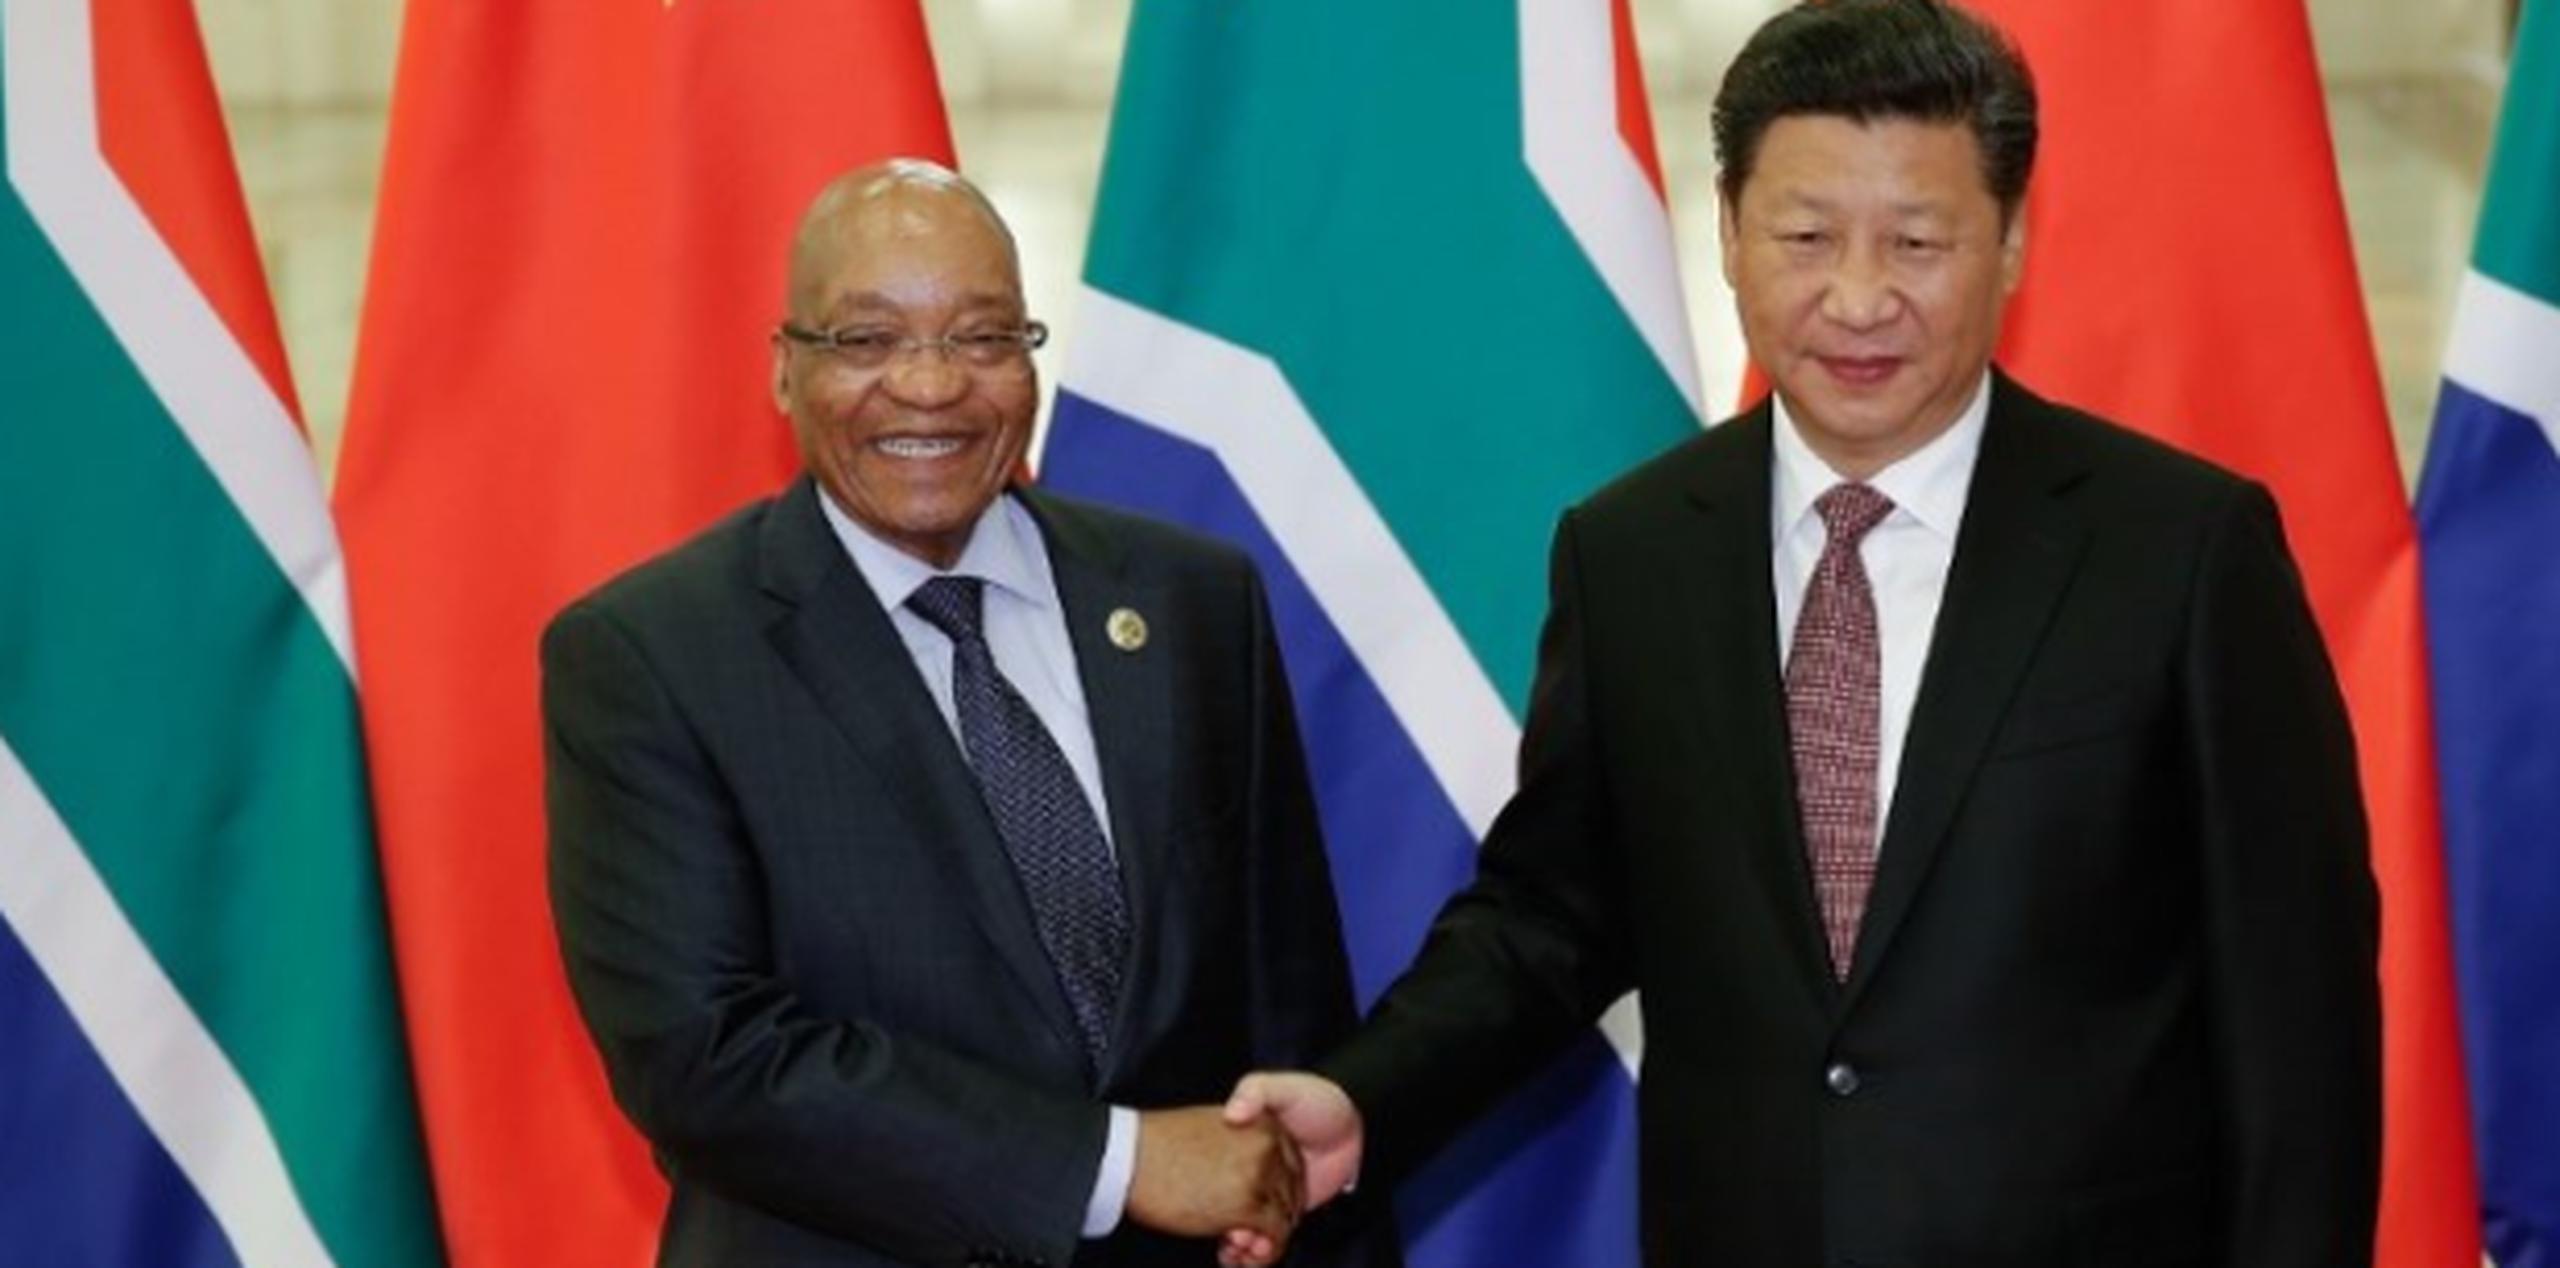 Jacob Zuma, izquierda, saluda a su homólogo chino, Xi Jinping. Portavoces del gobierno sudafricano aseguran que el presidente no corrió peligro. (AP)